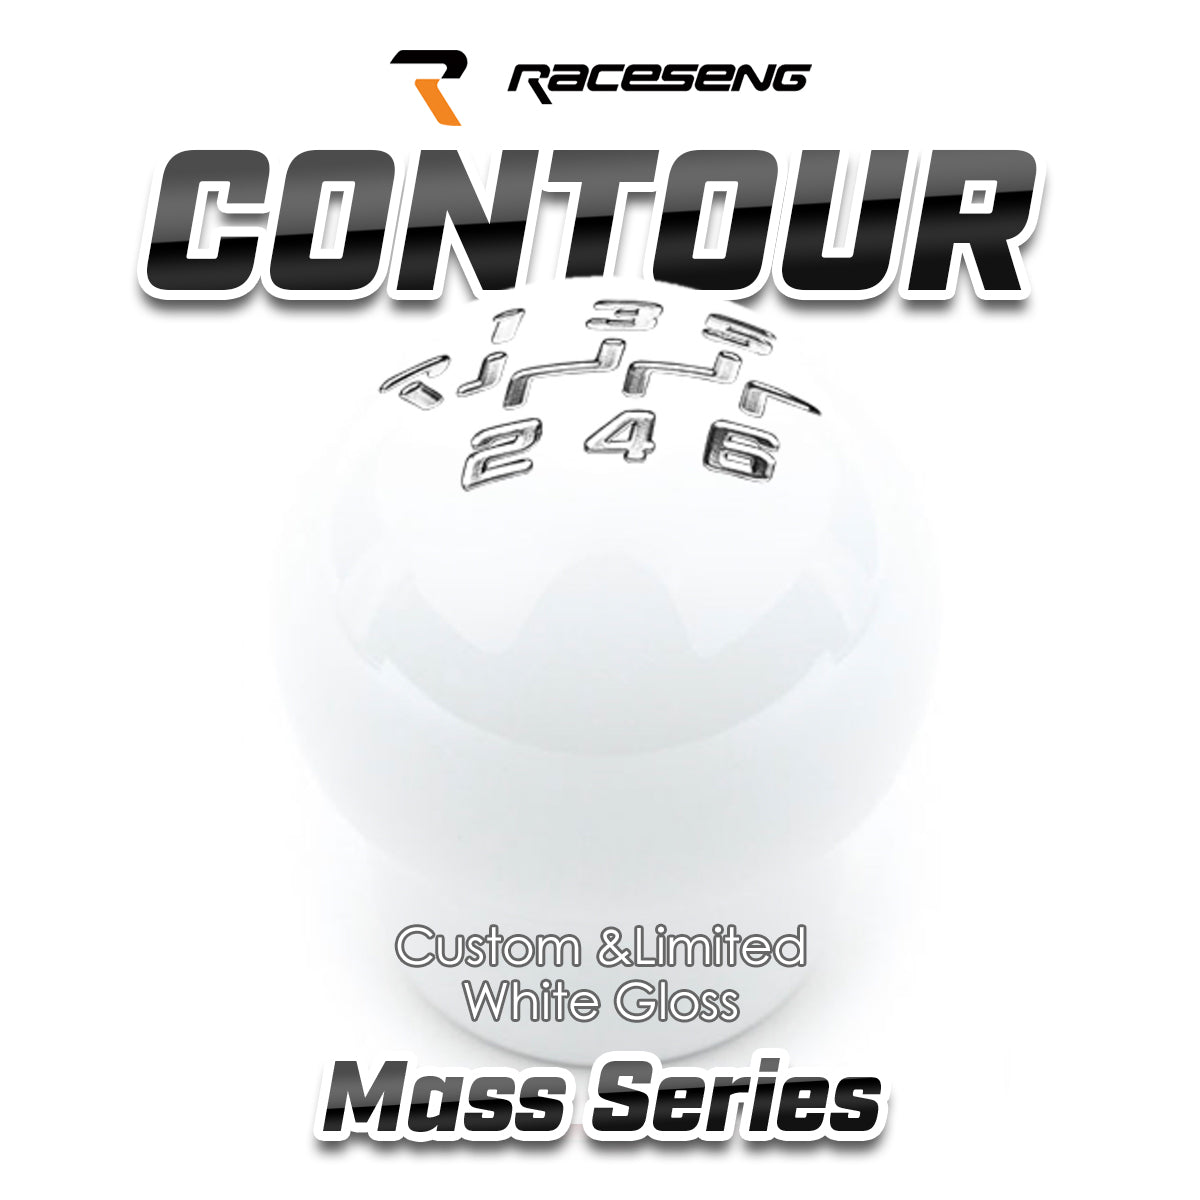 RACESENG レースセングシフトノブ MASSシリーズ CONTOUR コンツアー カスタムカラー・限定カラー